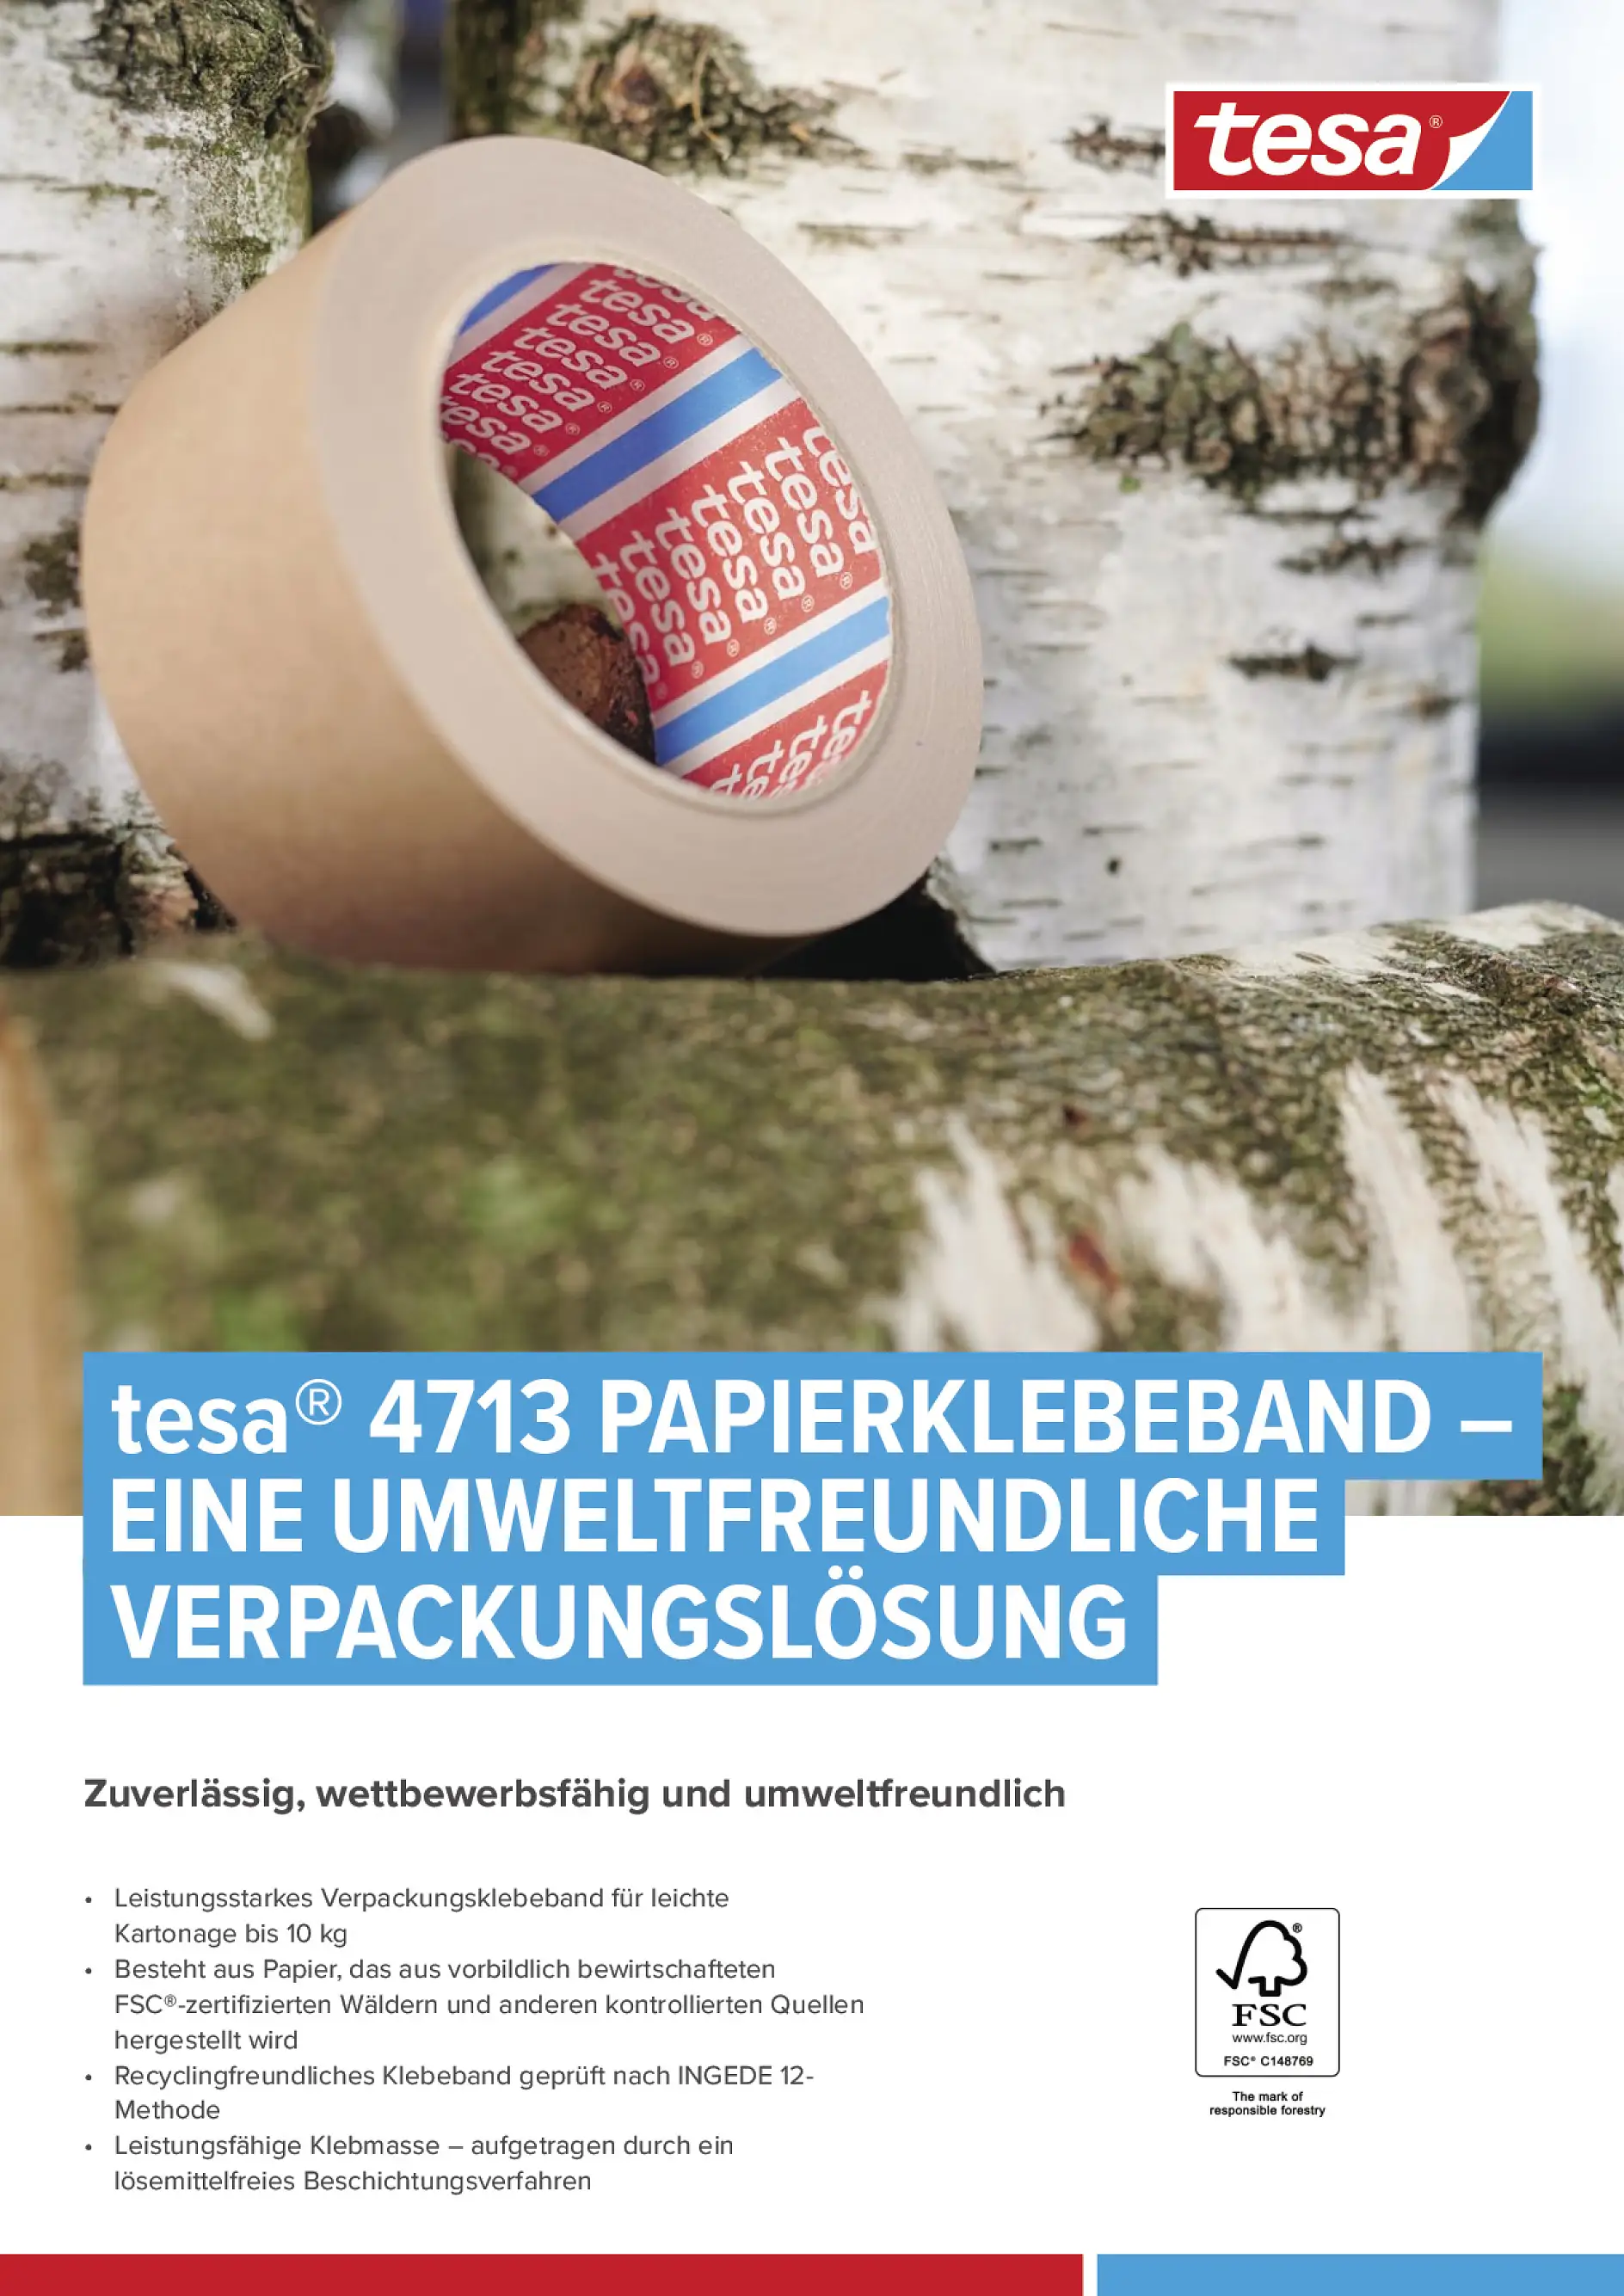 tesa® 4713 Papierklebeband - eine umweltfreundliche Verpackungslösung